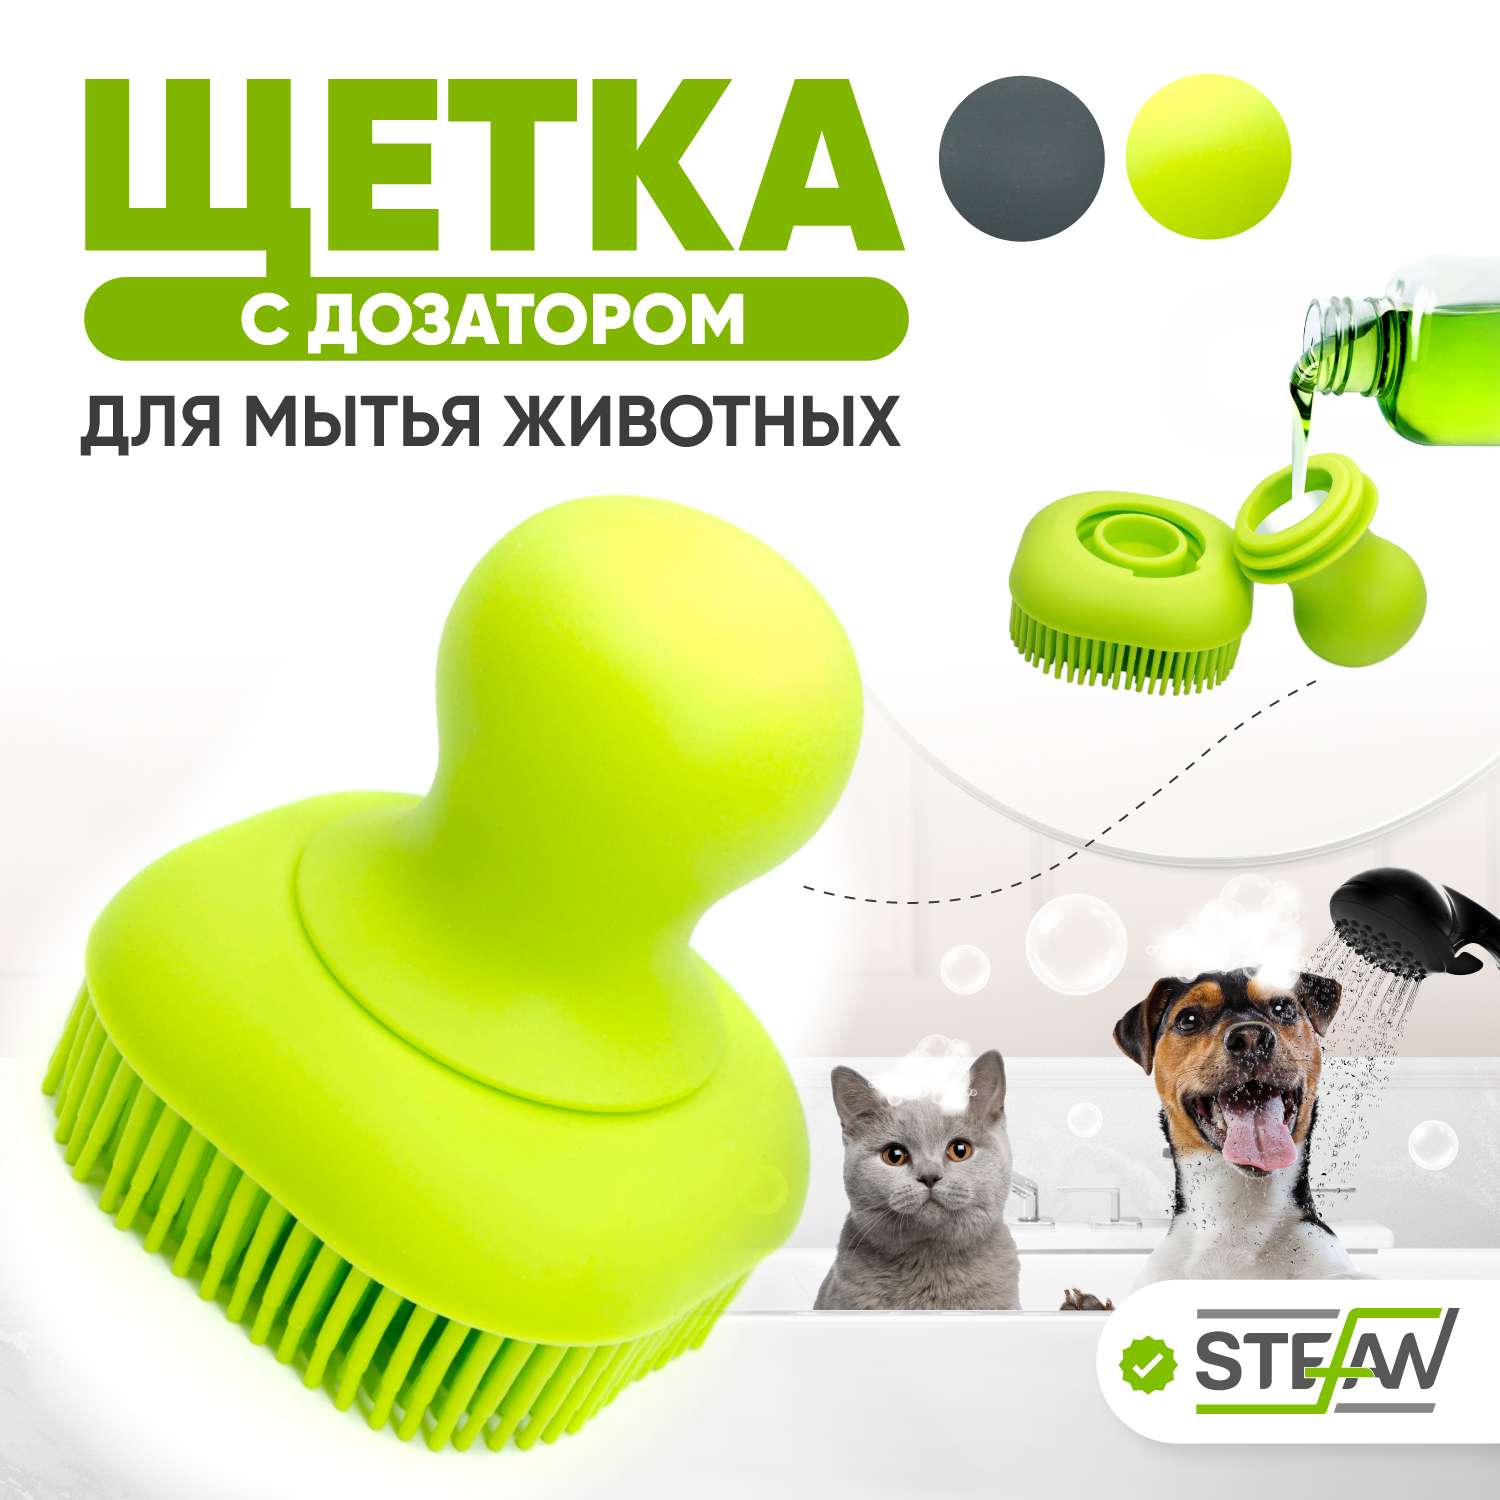 Массажная щетка Stefan для мытья животных с дозатором шампуня силиконовая салатовая - фото 1